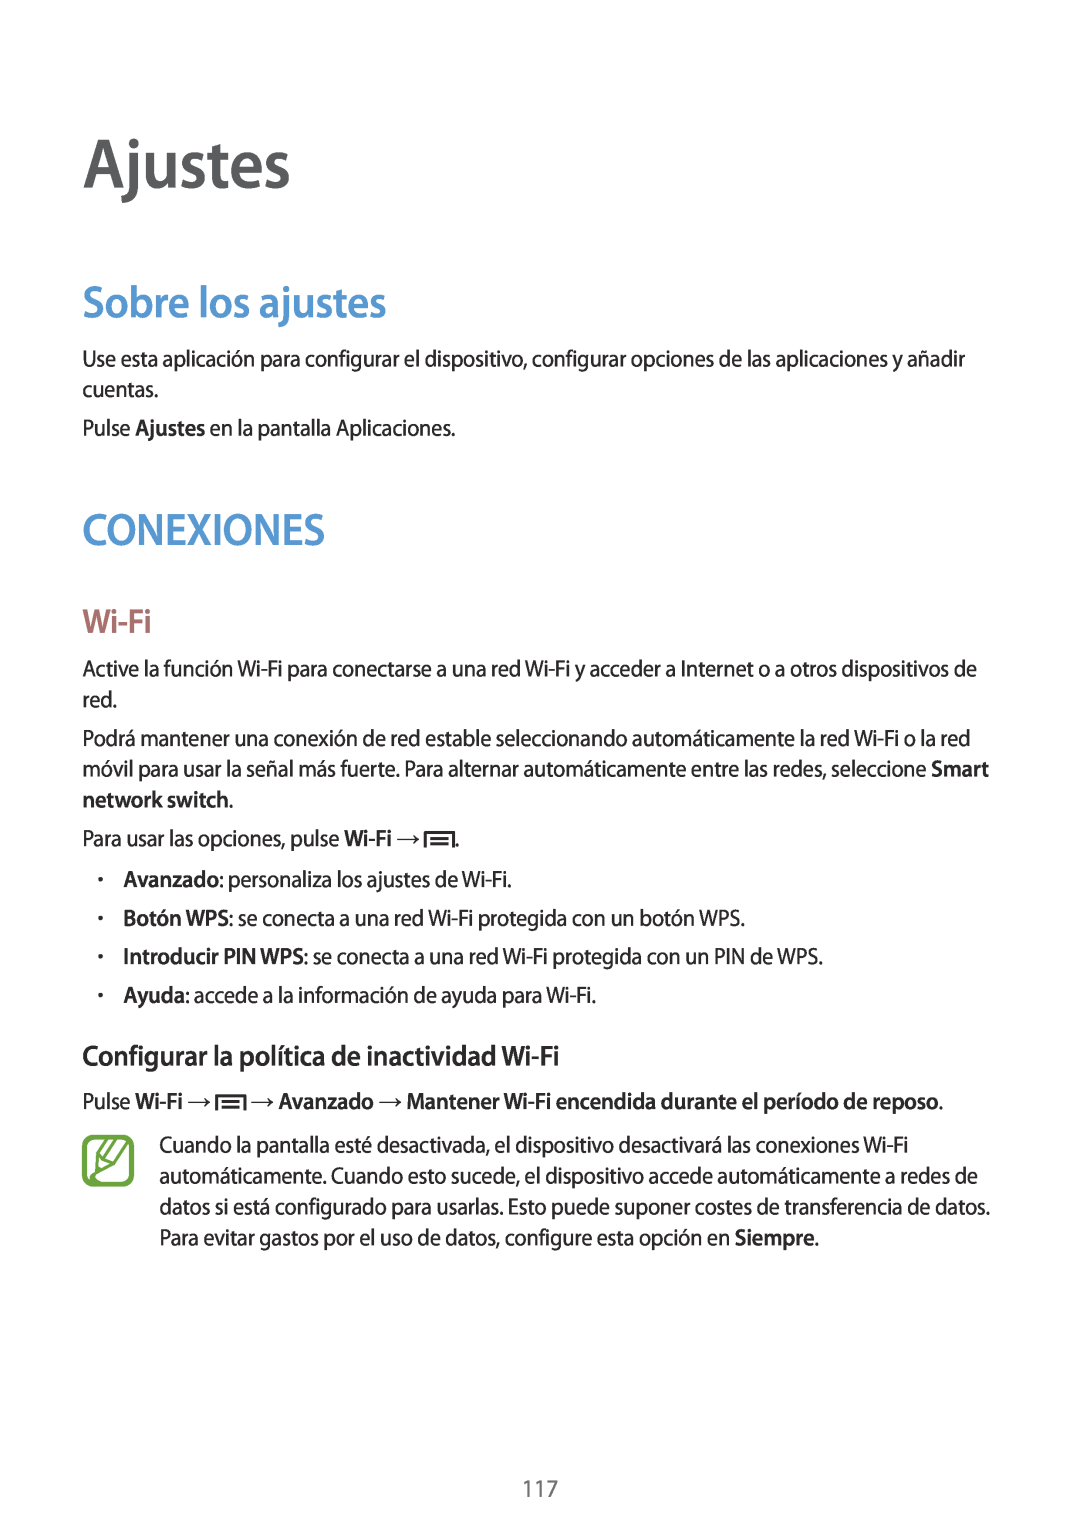 Samsung SM-P6050ZWEPHE manual Ajustes, Sobre los ajustes, Conexiones, Configurar la política de inactividad Wi-Fi 